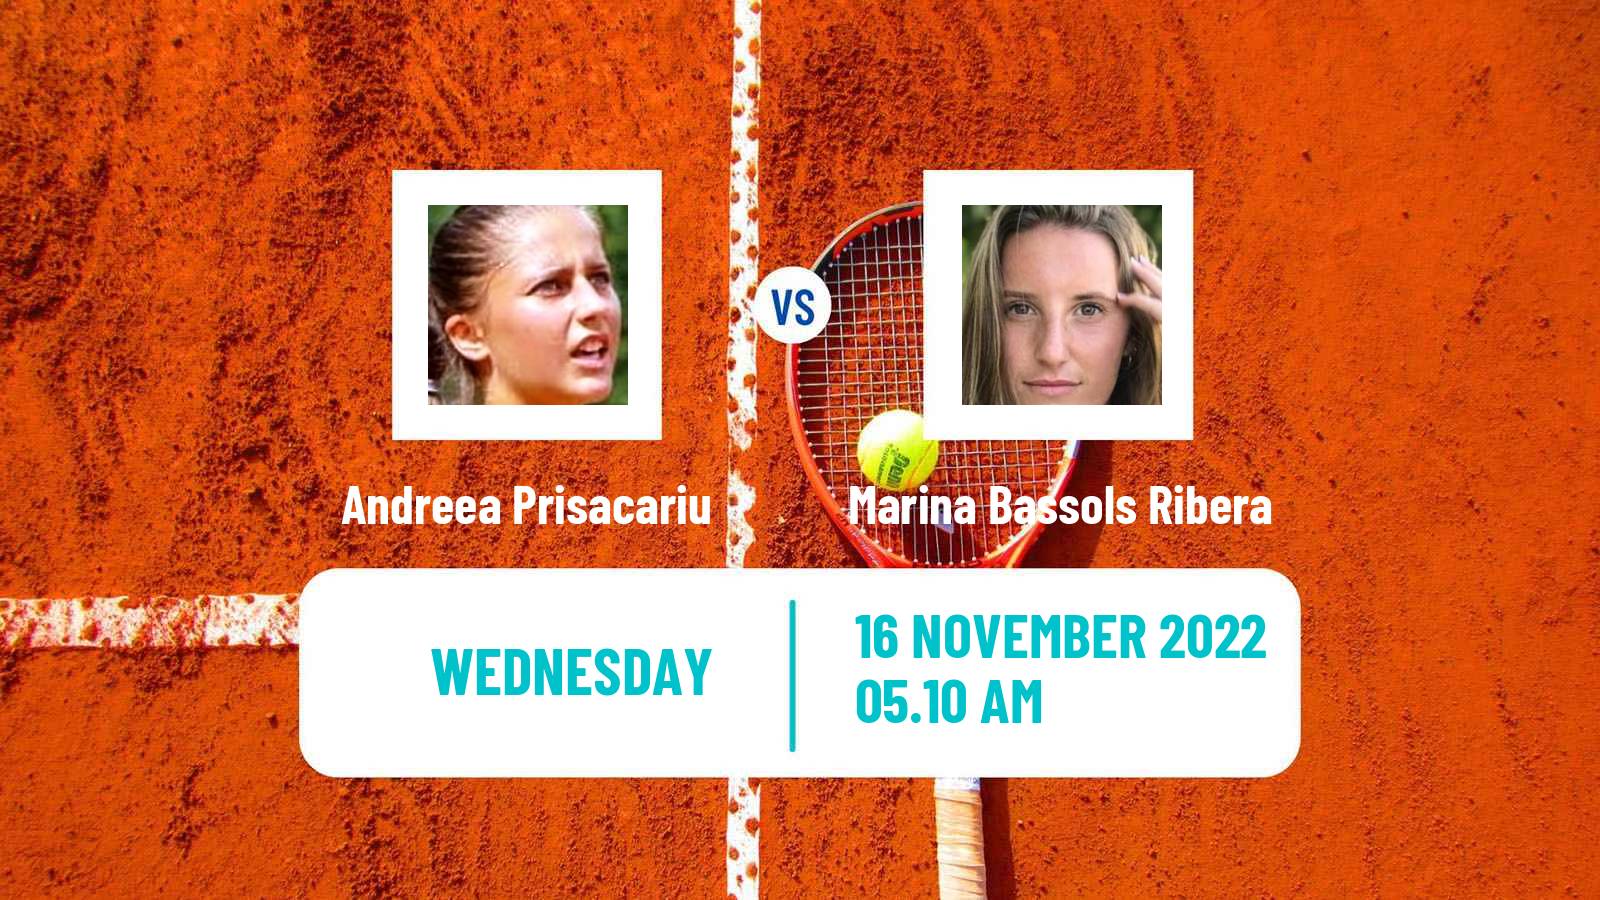 Tennis ITF Tournaments Andreea Prisacariu - Marina Bassols Ribera